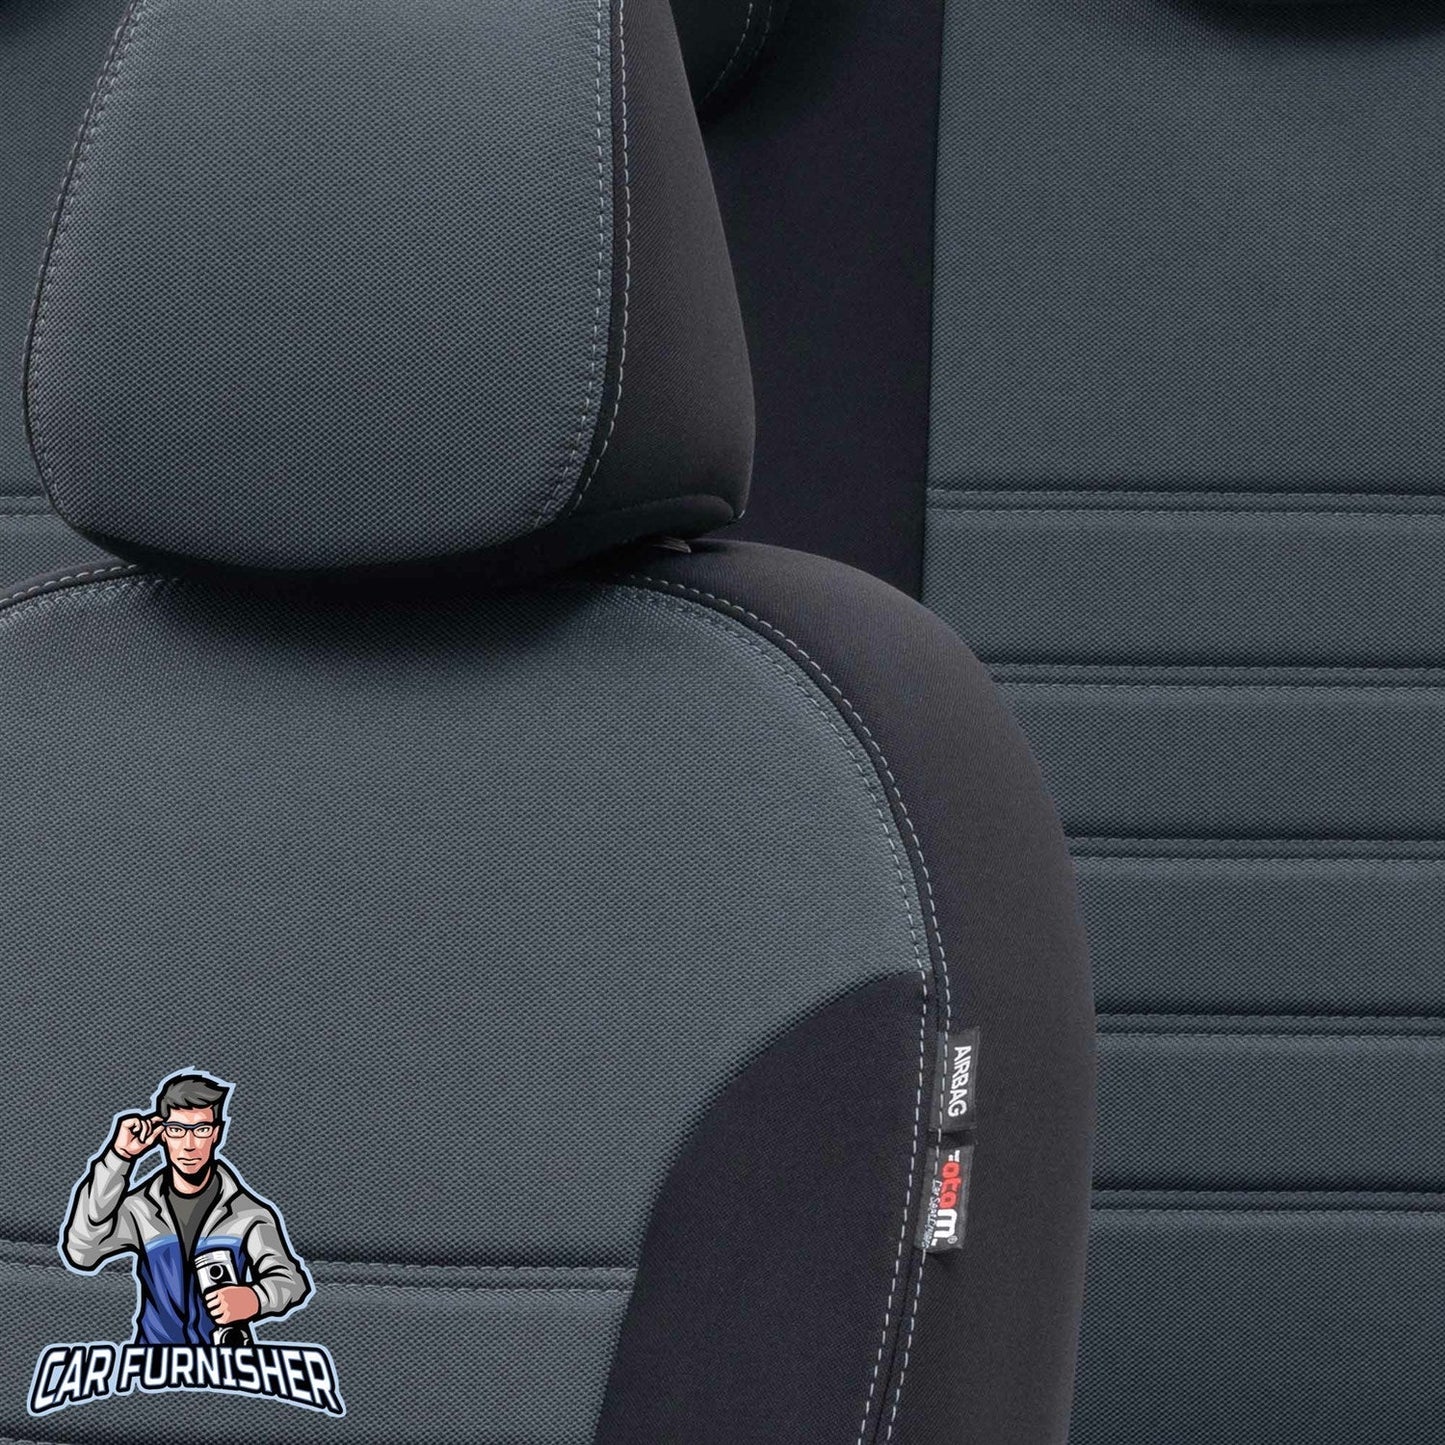 Chevrolet Captiva Seat Cover Original Jacquard Design Smoked Black Jacquard Fabric